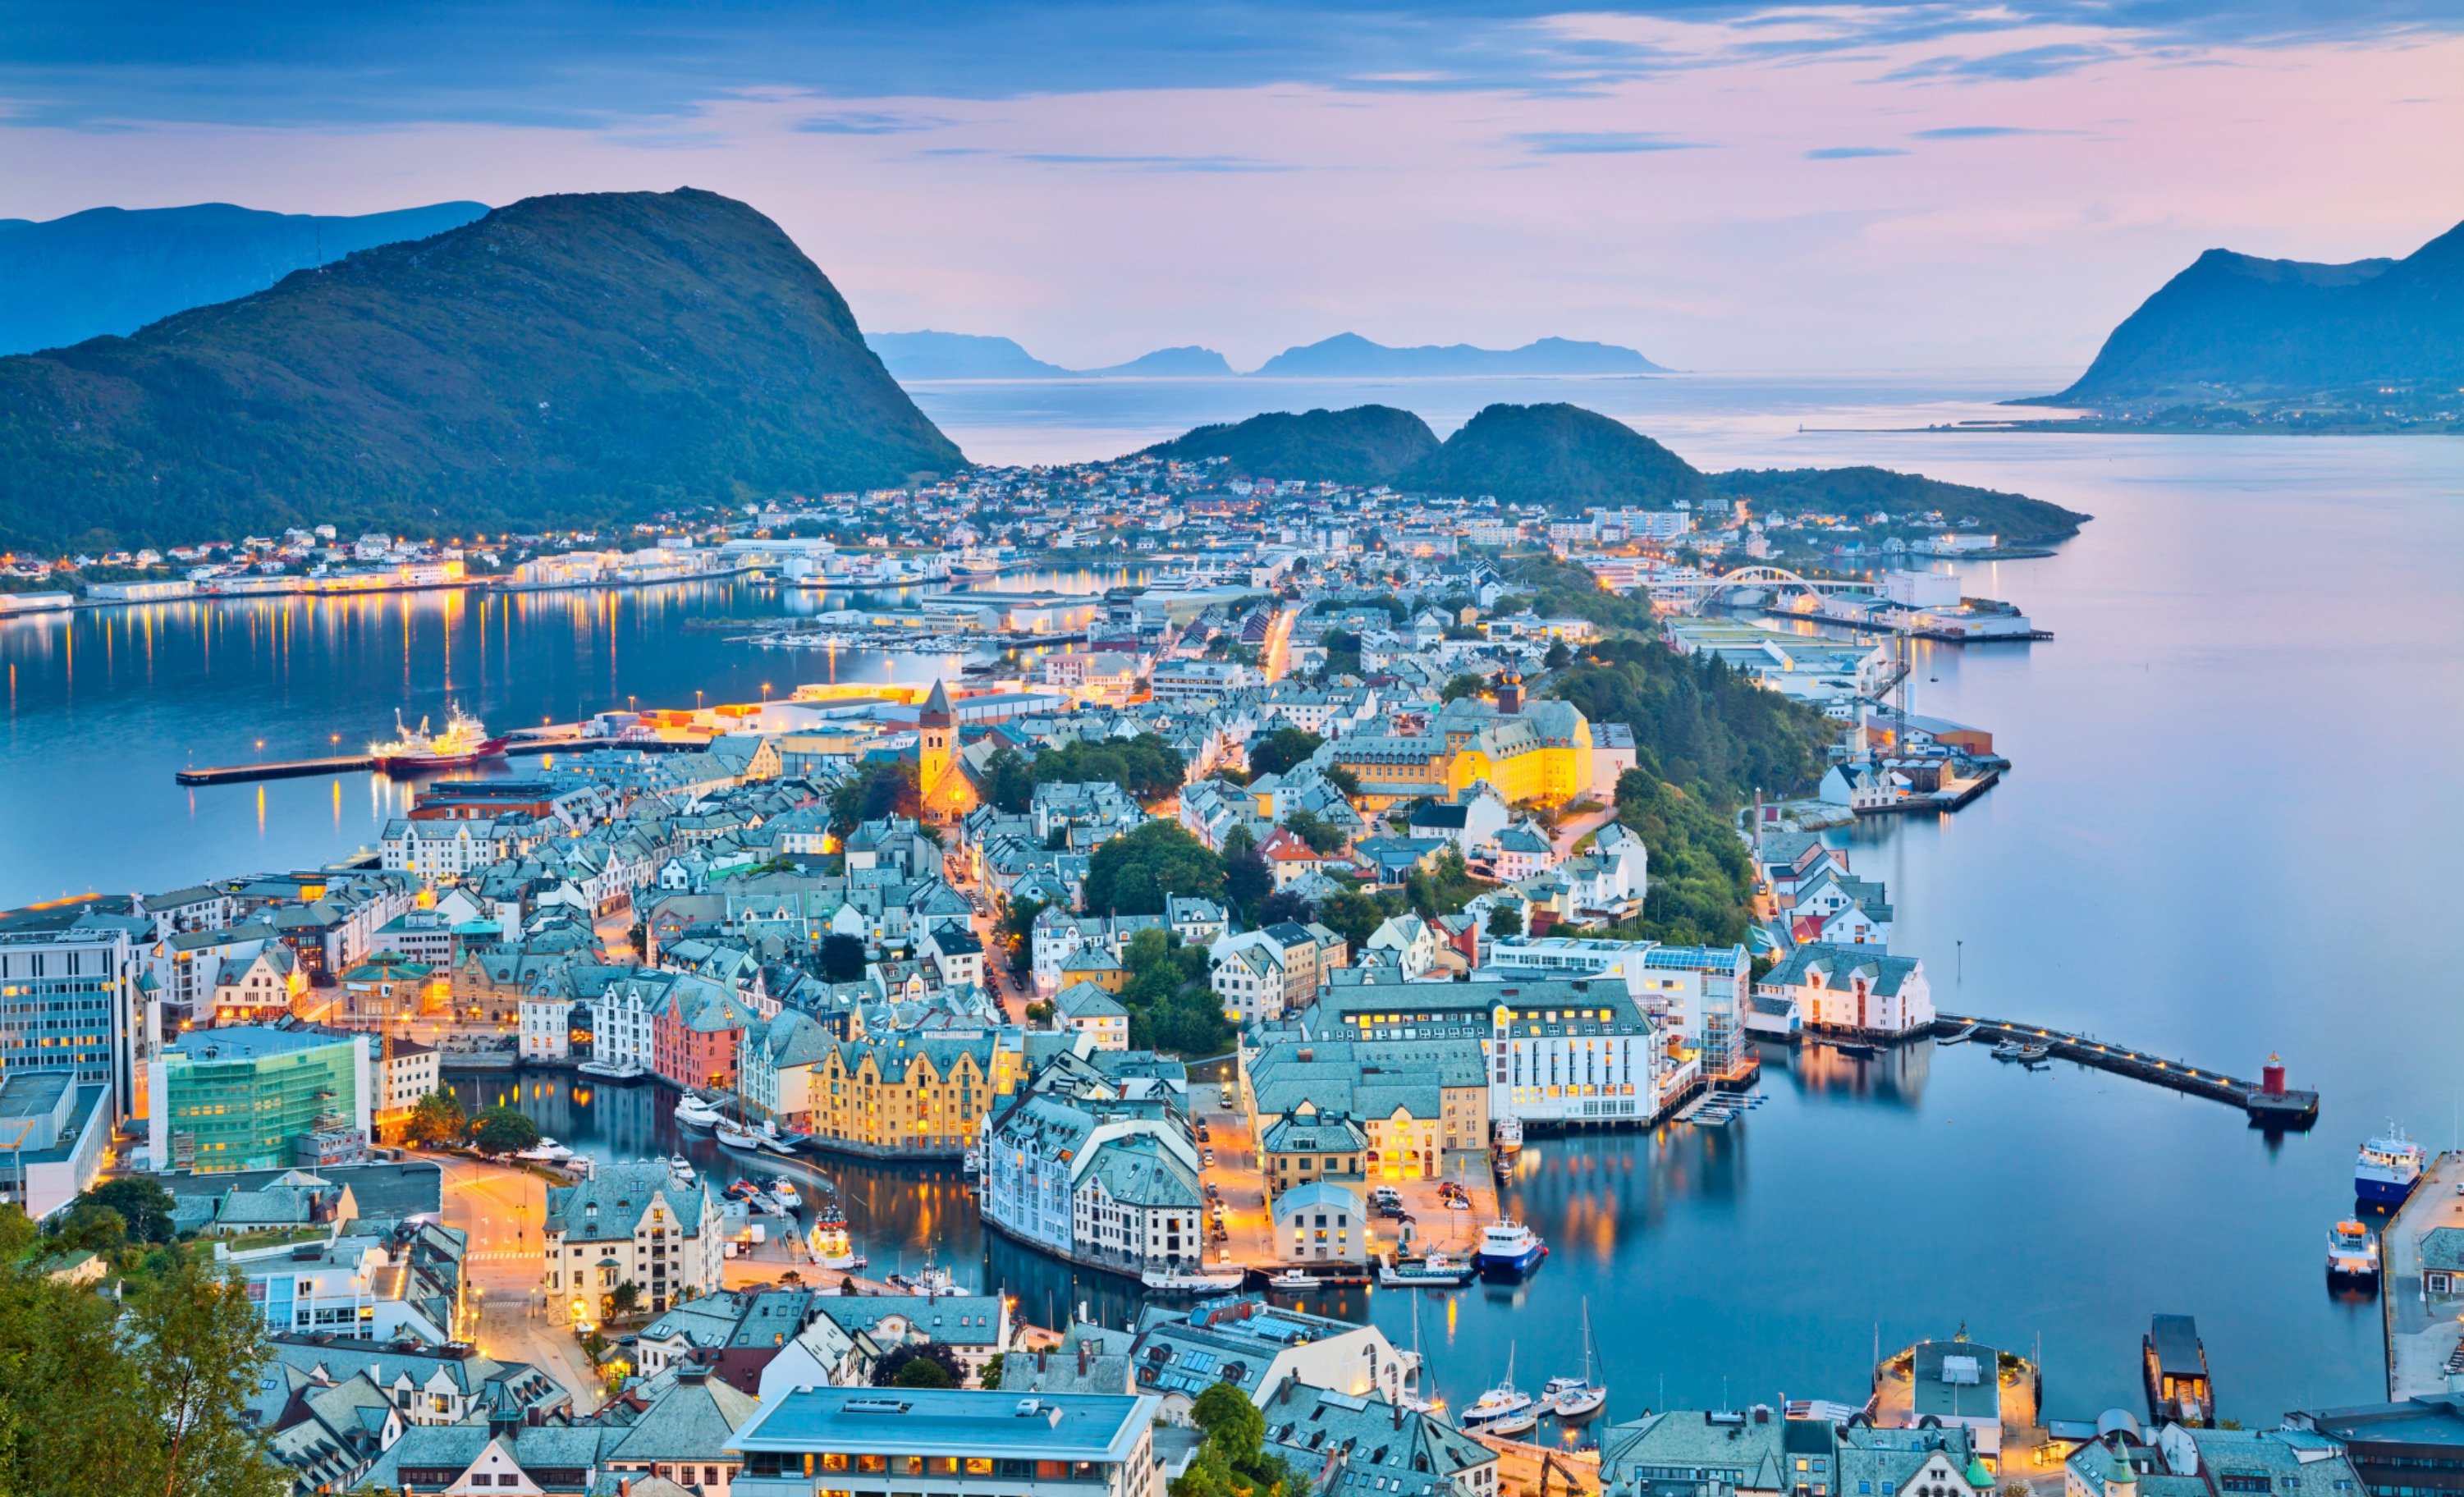 Интересные города для туризма. Королевство Норвегия Осло. Олесунн Норвегия. Олесунд Норвегия фьорды. Порт Олесунн Норвегия.